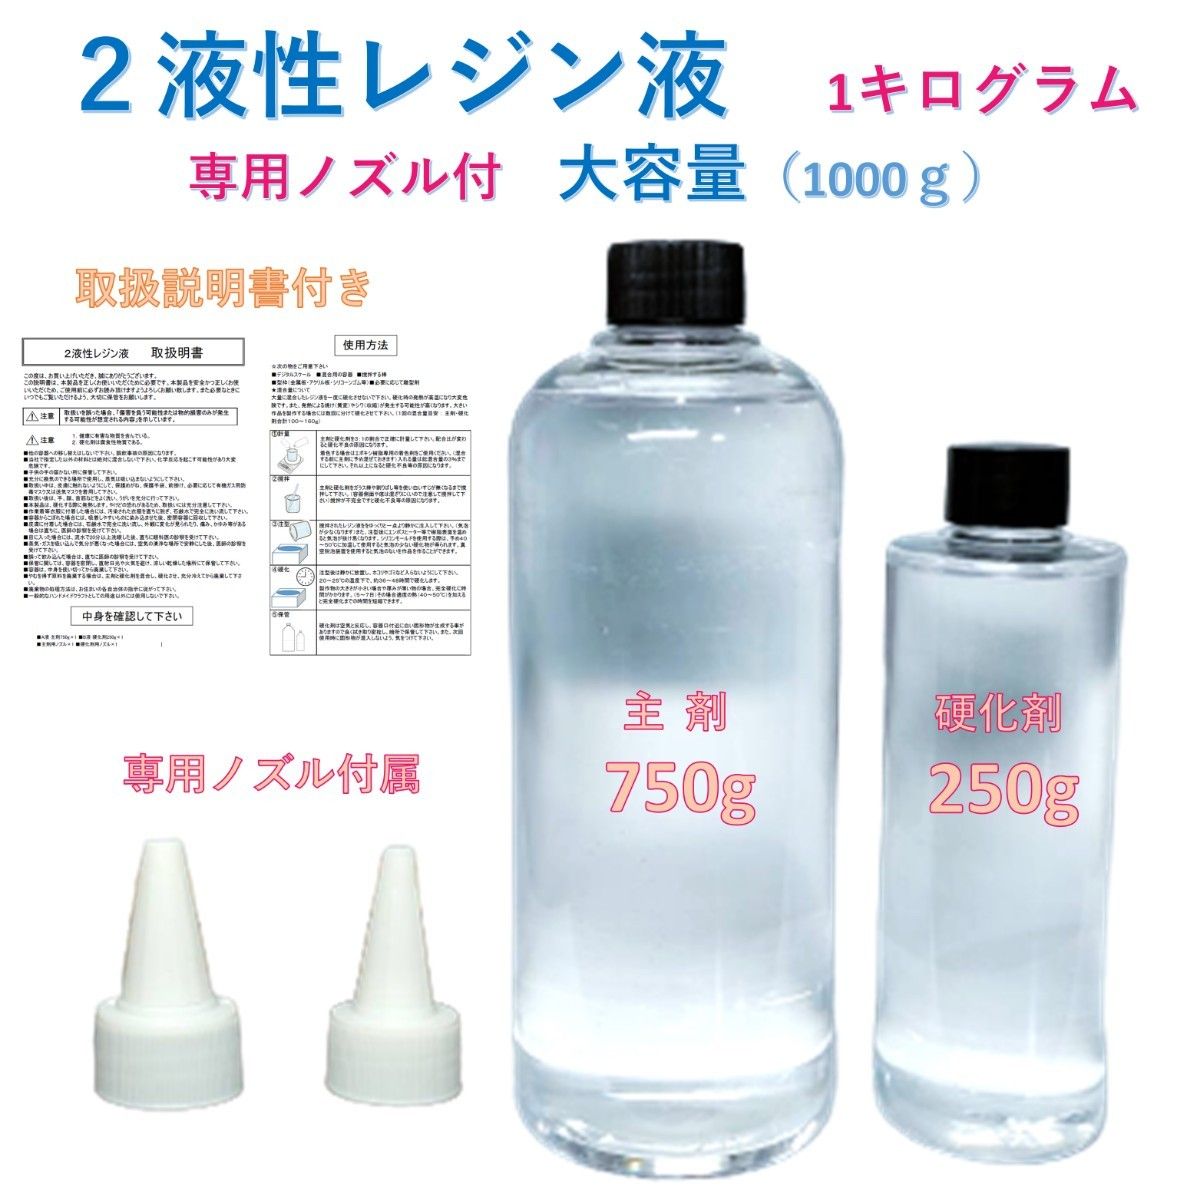 高品質 2液性レジン液 エポキシ樹脂 エポキシレジン液 大容量1kg 混合 